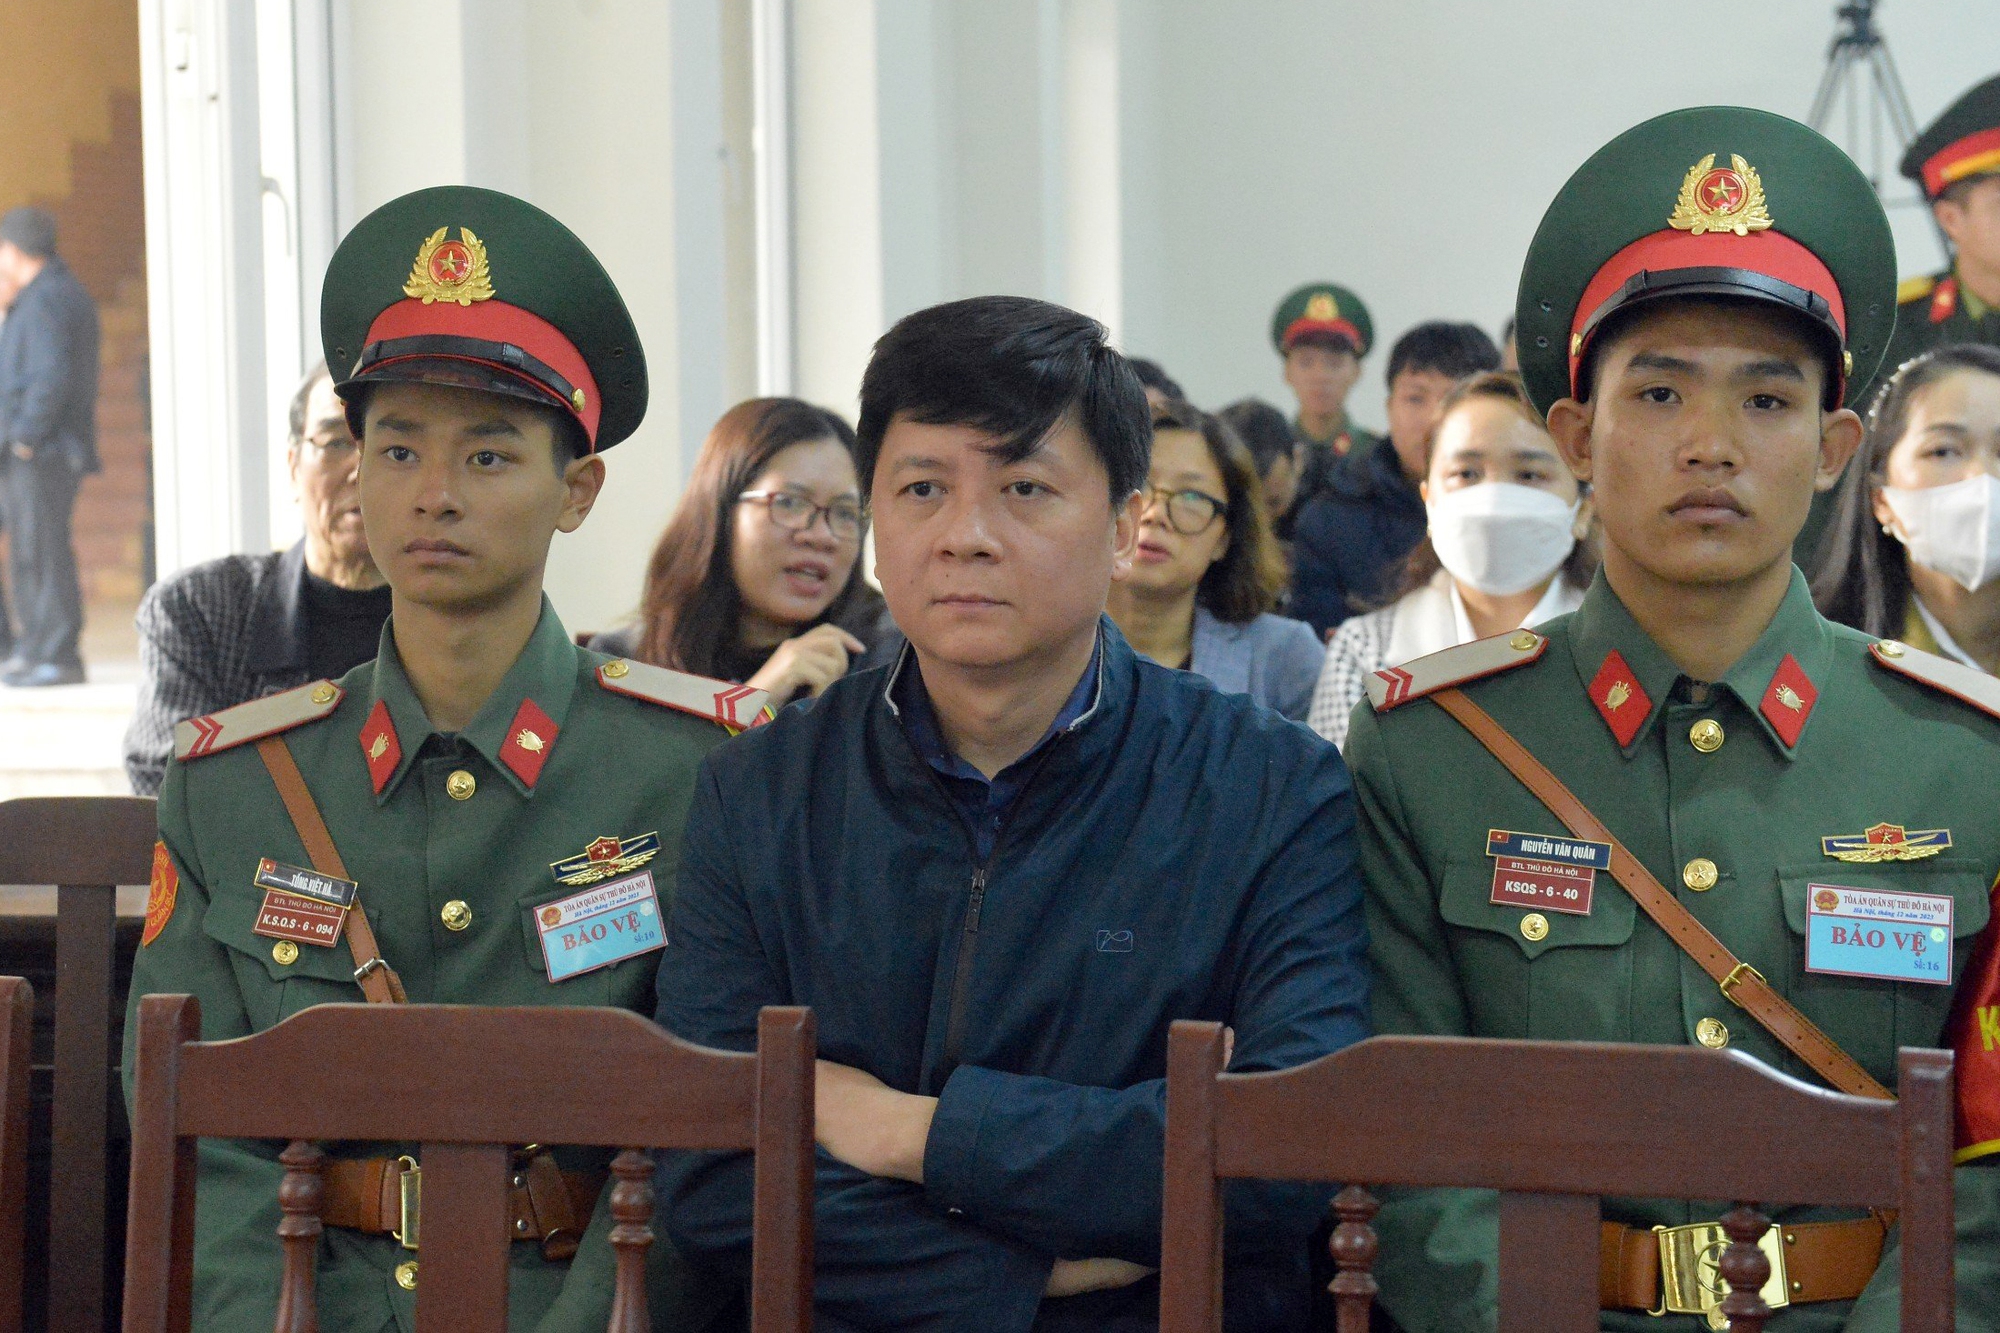 Tổng giám đốc Việt Á Phan Quốc Việt khai gì tại tòa án quân sự? - Ảnh 6.